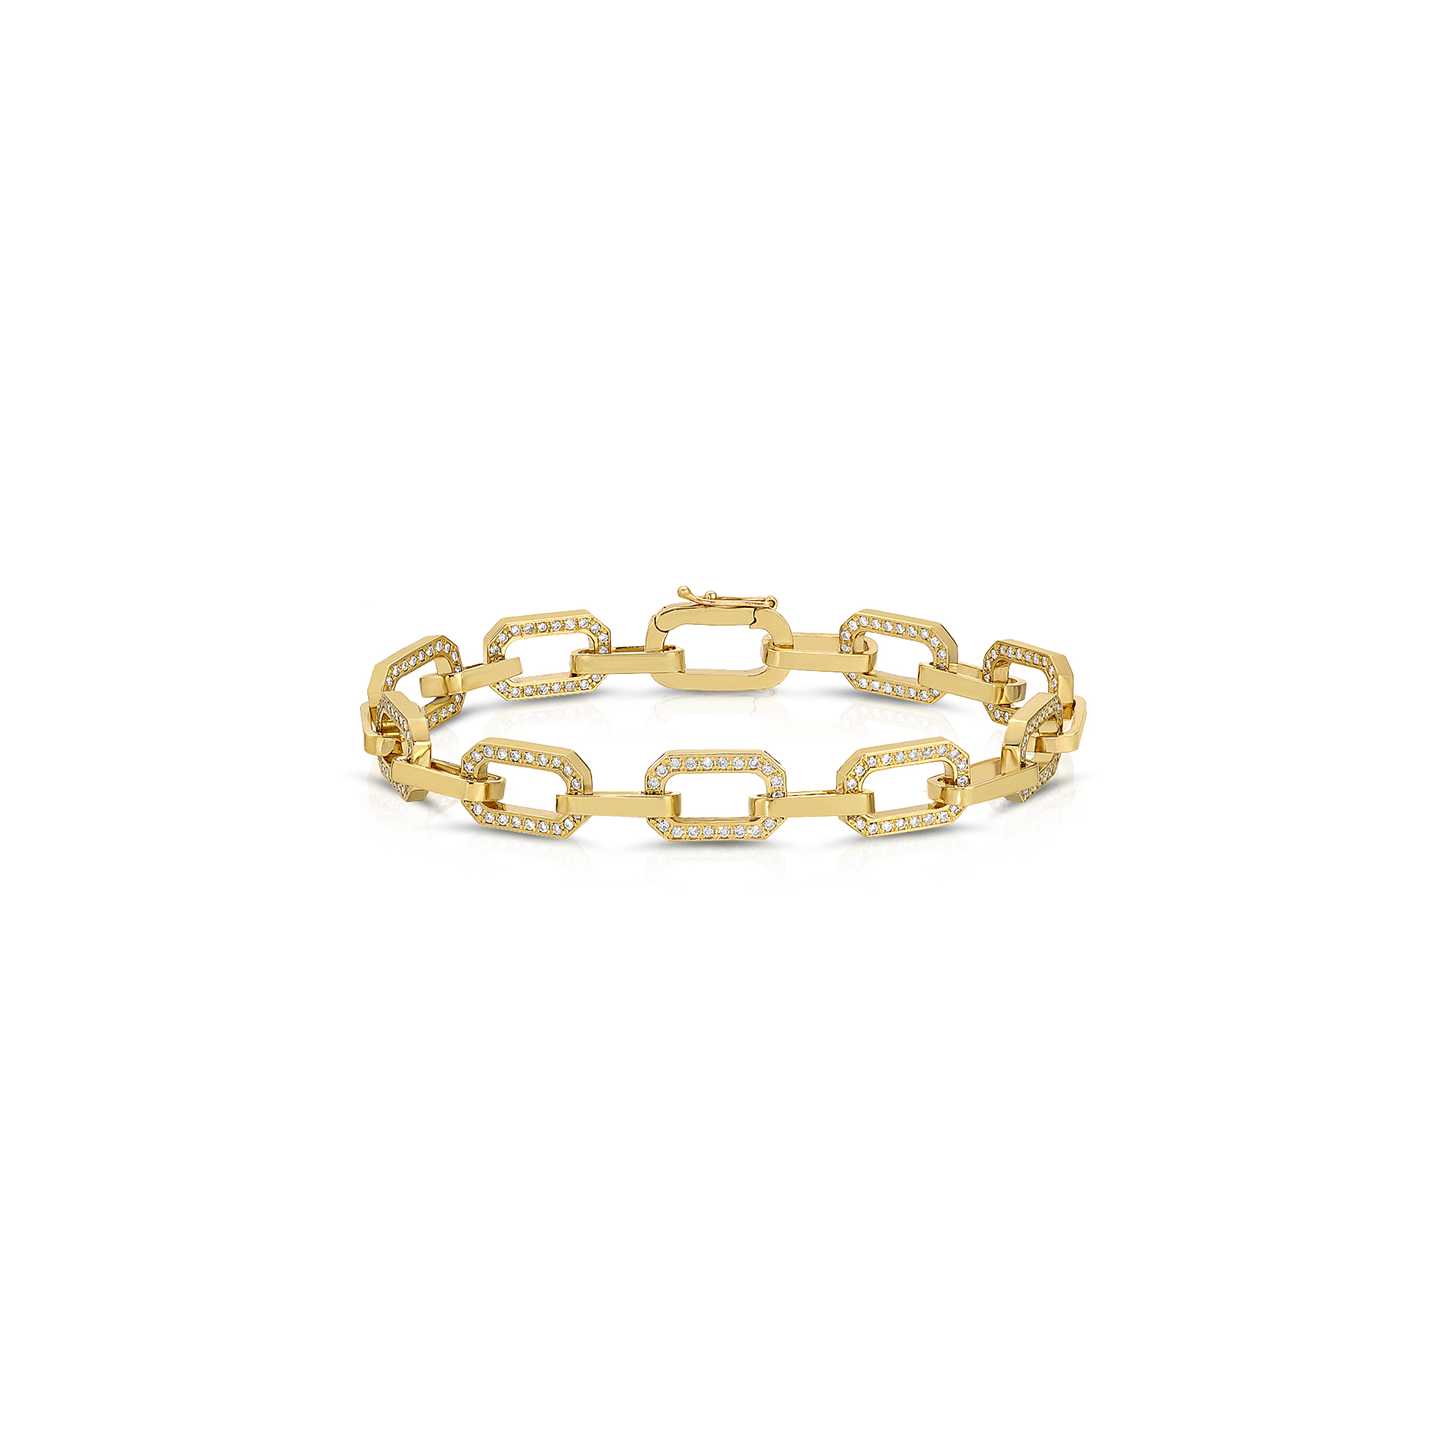 Nancy Newberg Gold Chain Bracelet with Diamond Links